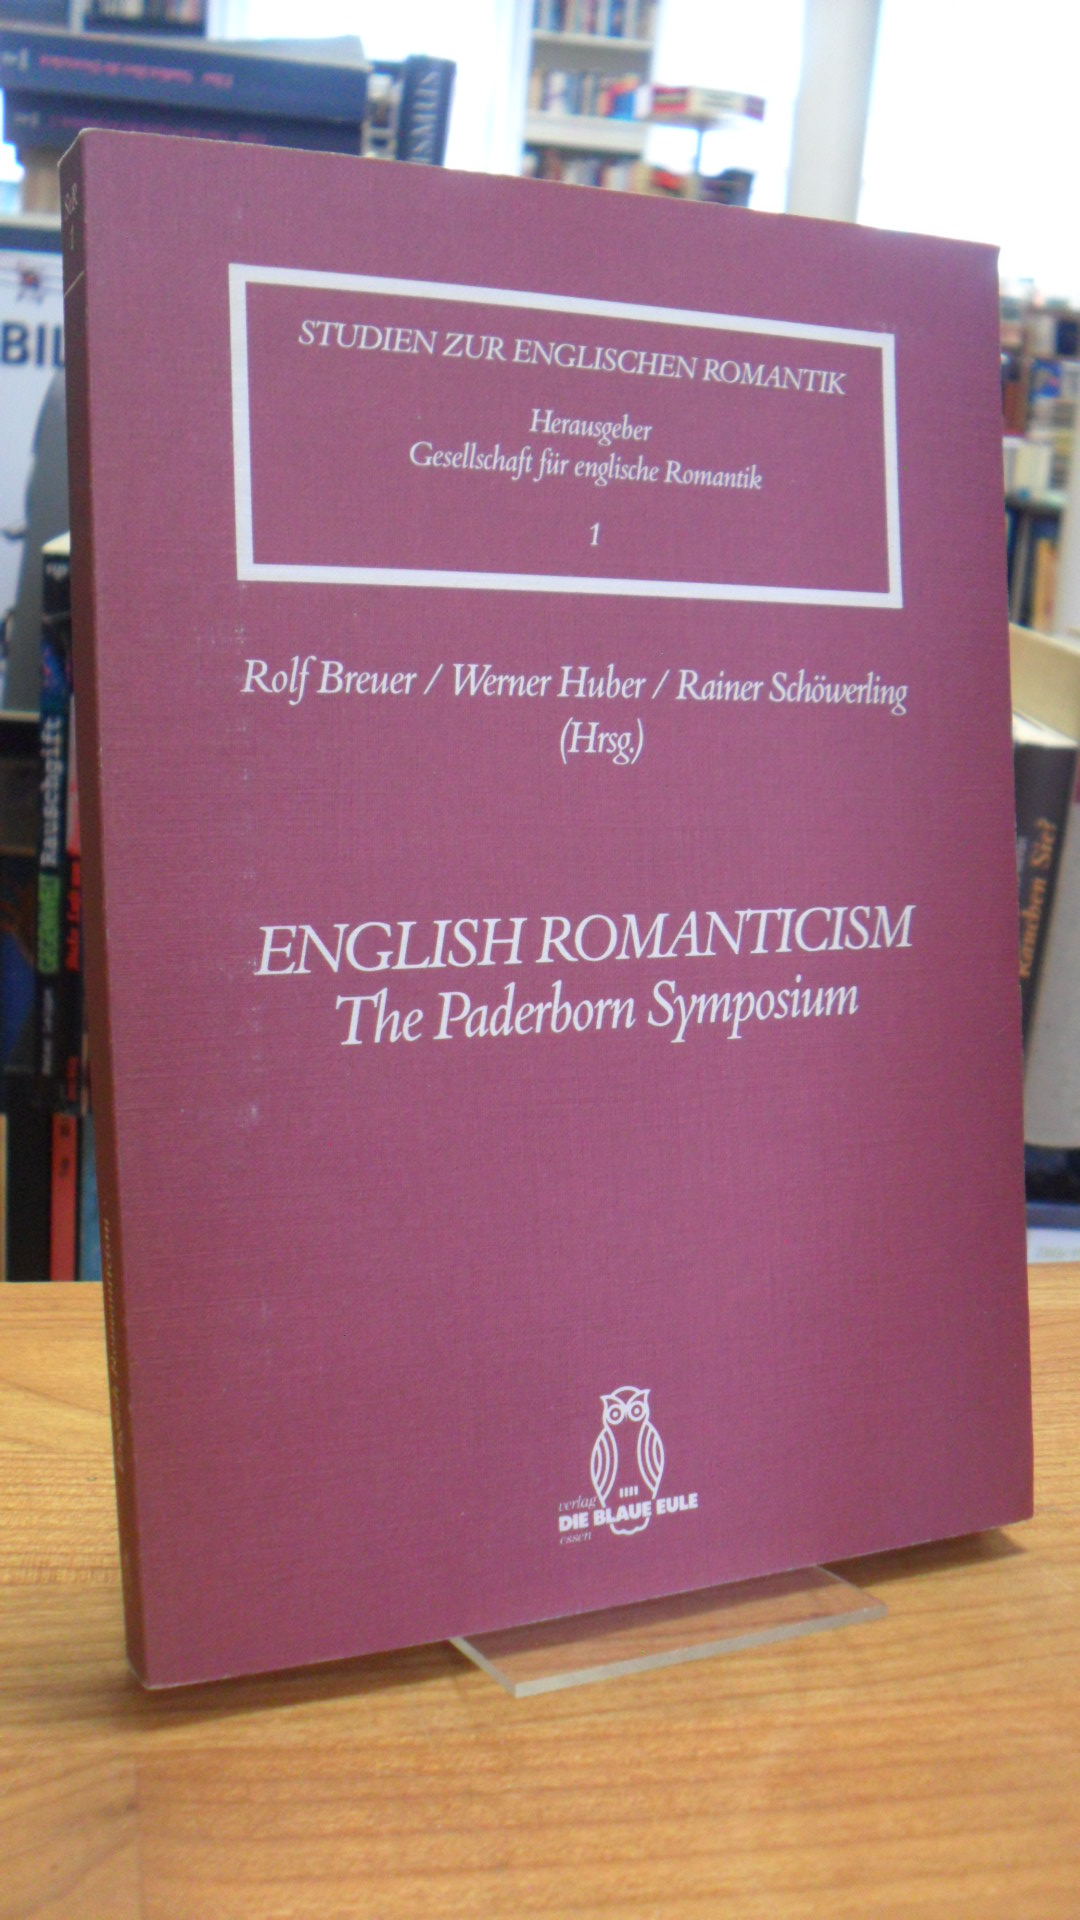 English Romanticism – The Paderborn Symposium,